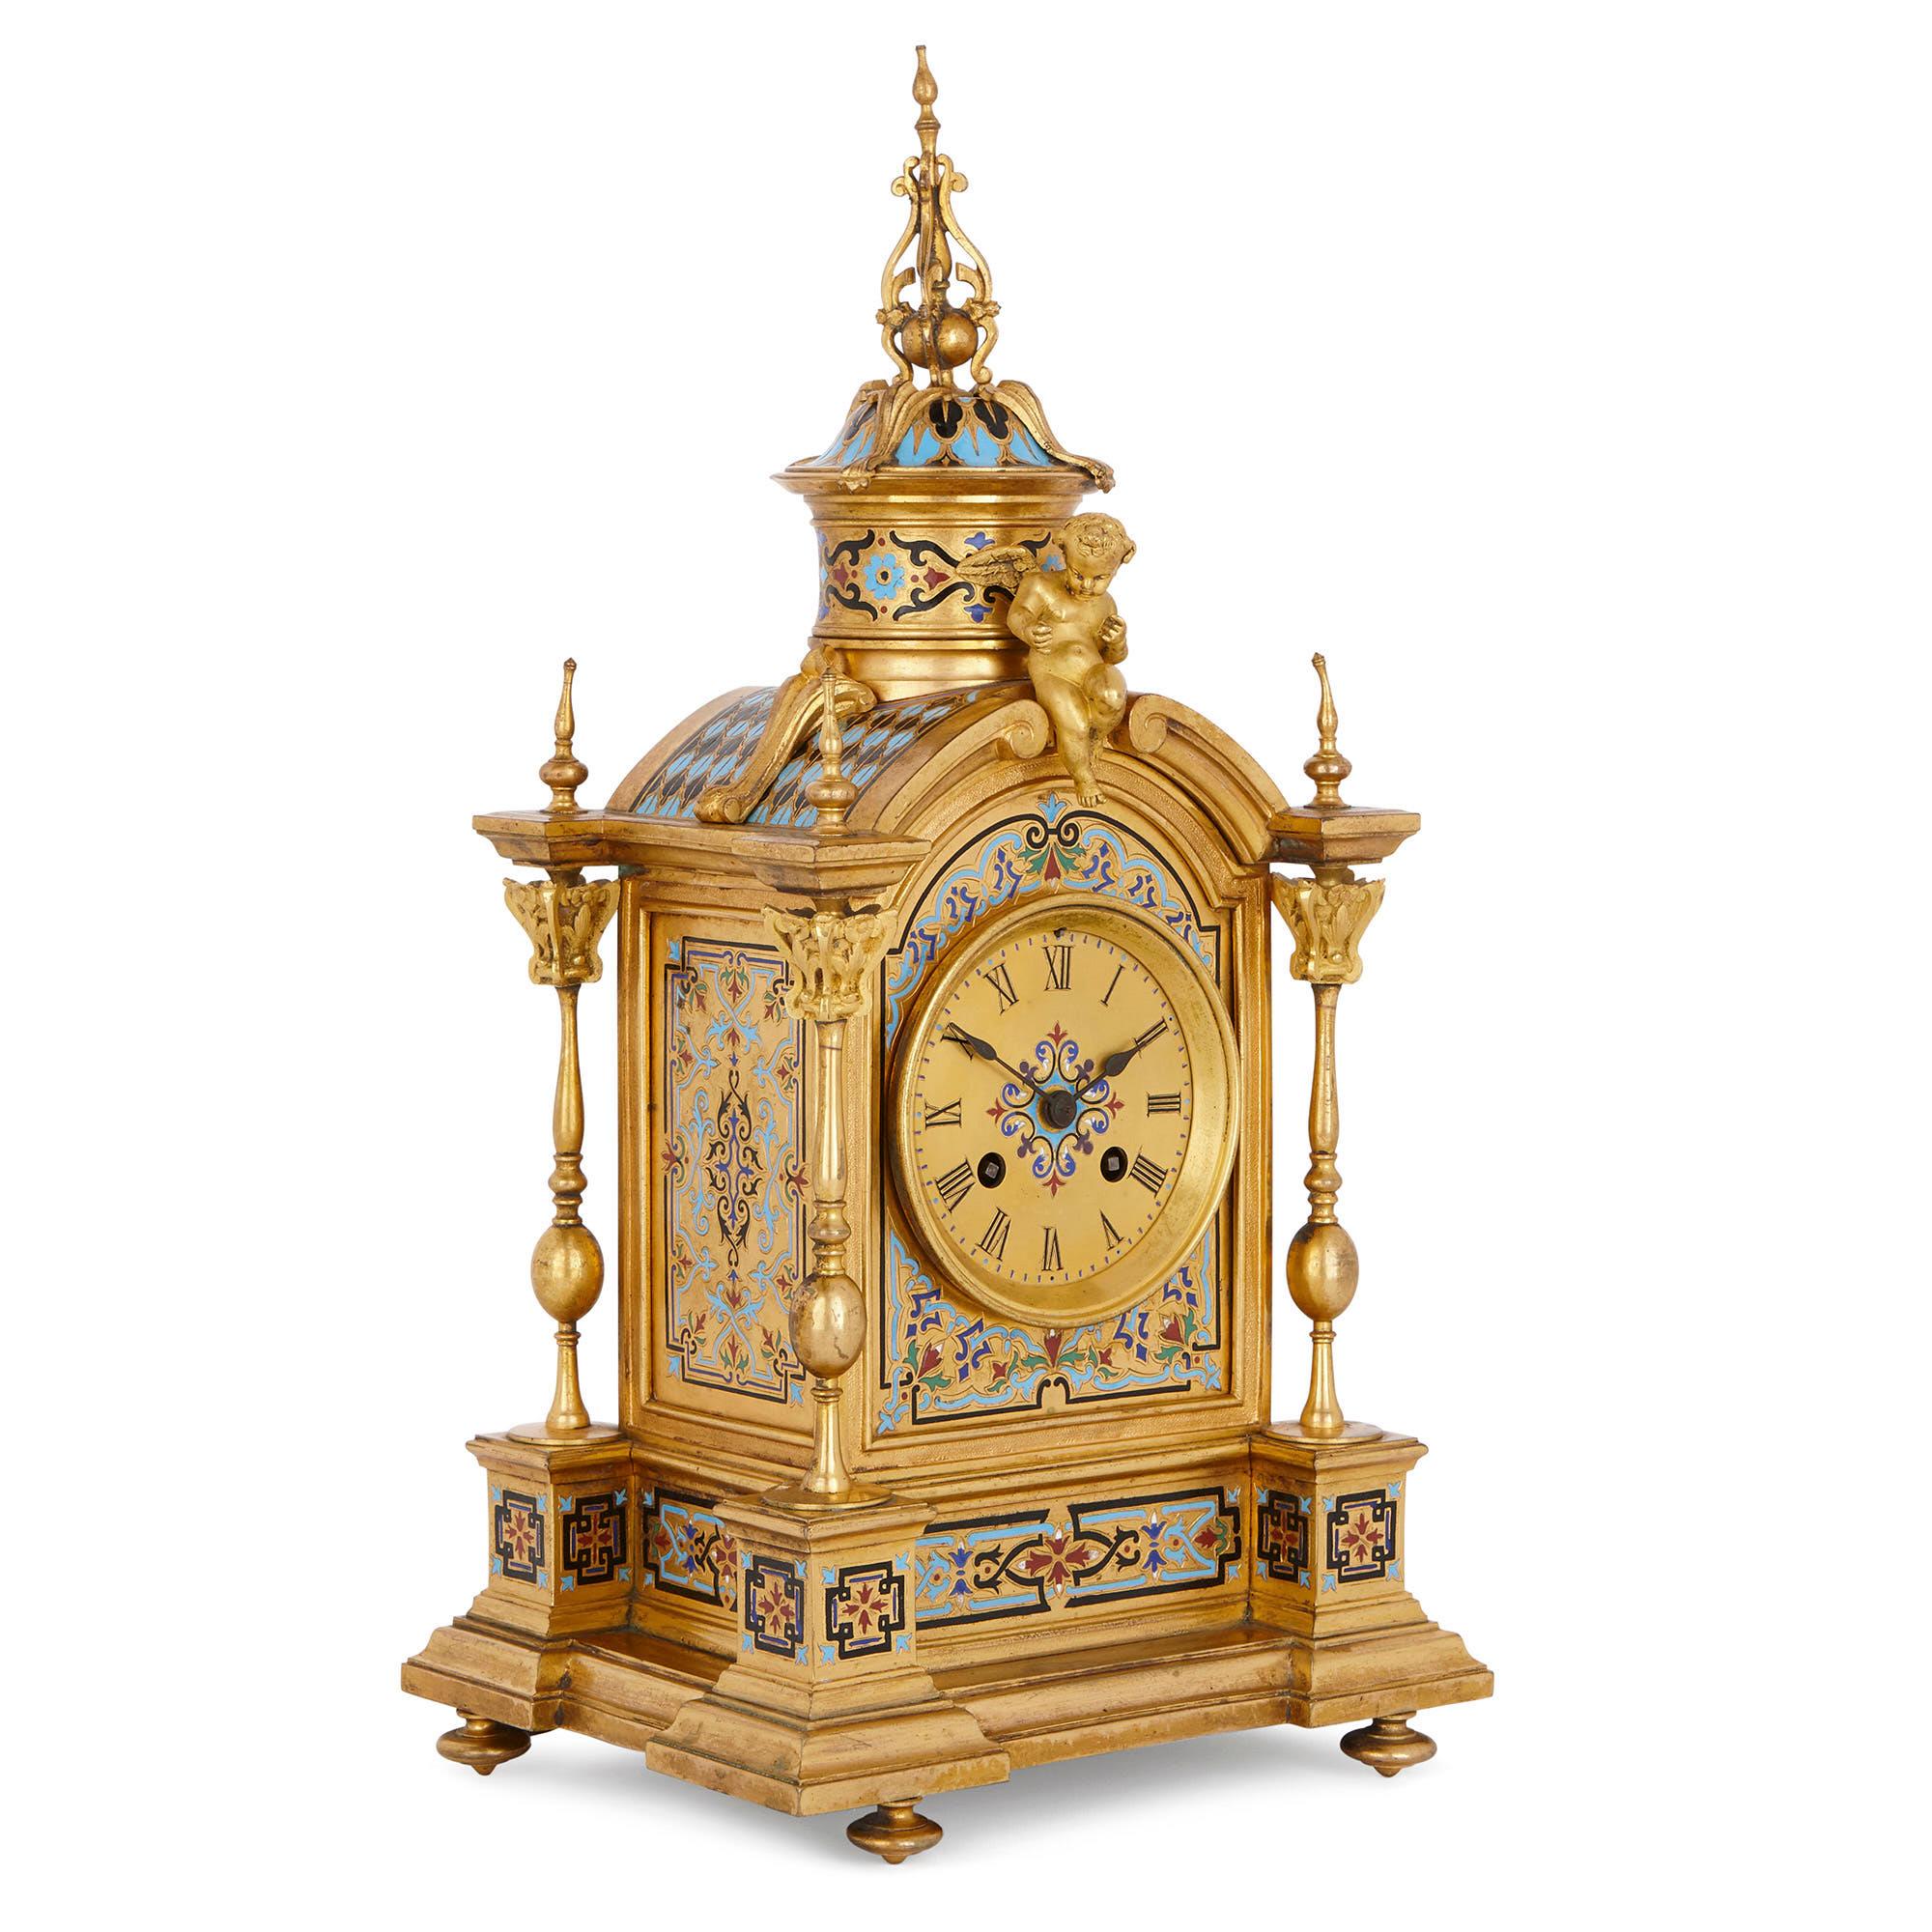 Ce magnifique ensemble d'horloges, qui comprend une horloge de cheminée et une paire de vases, a été conçu en France vers 1870 dans un merveilleux style néo-Renaissance. L'ensemble a été fabriqué en bronze doré (ormolu) et orné d'émail champlevé.